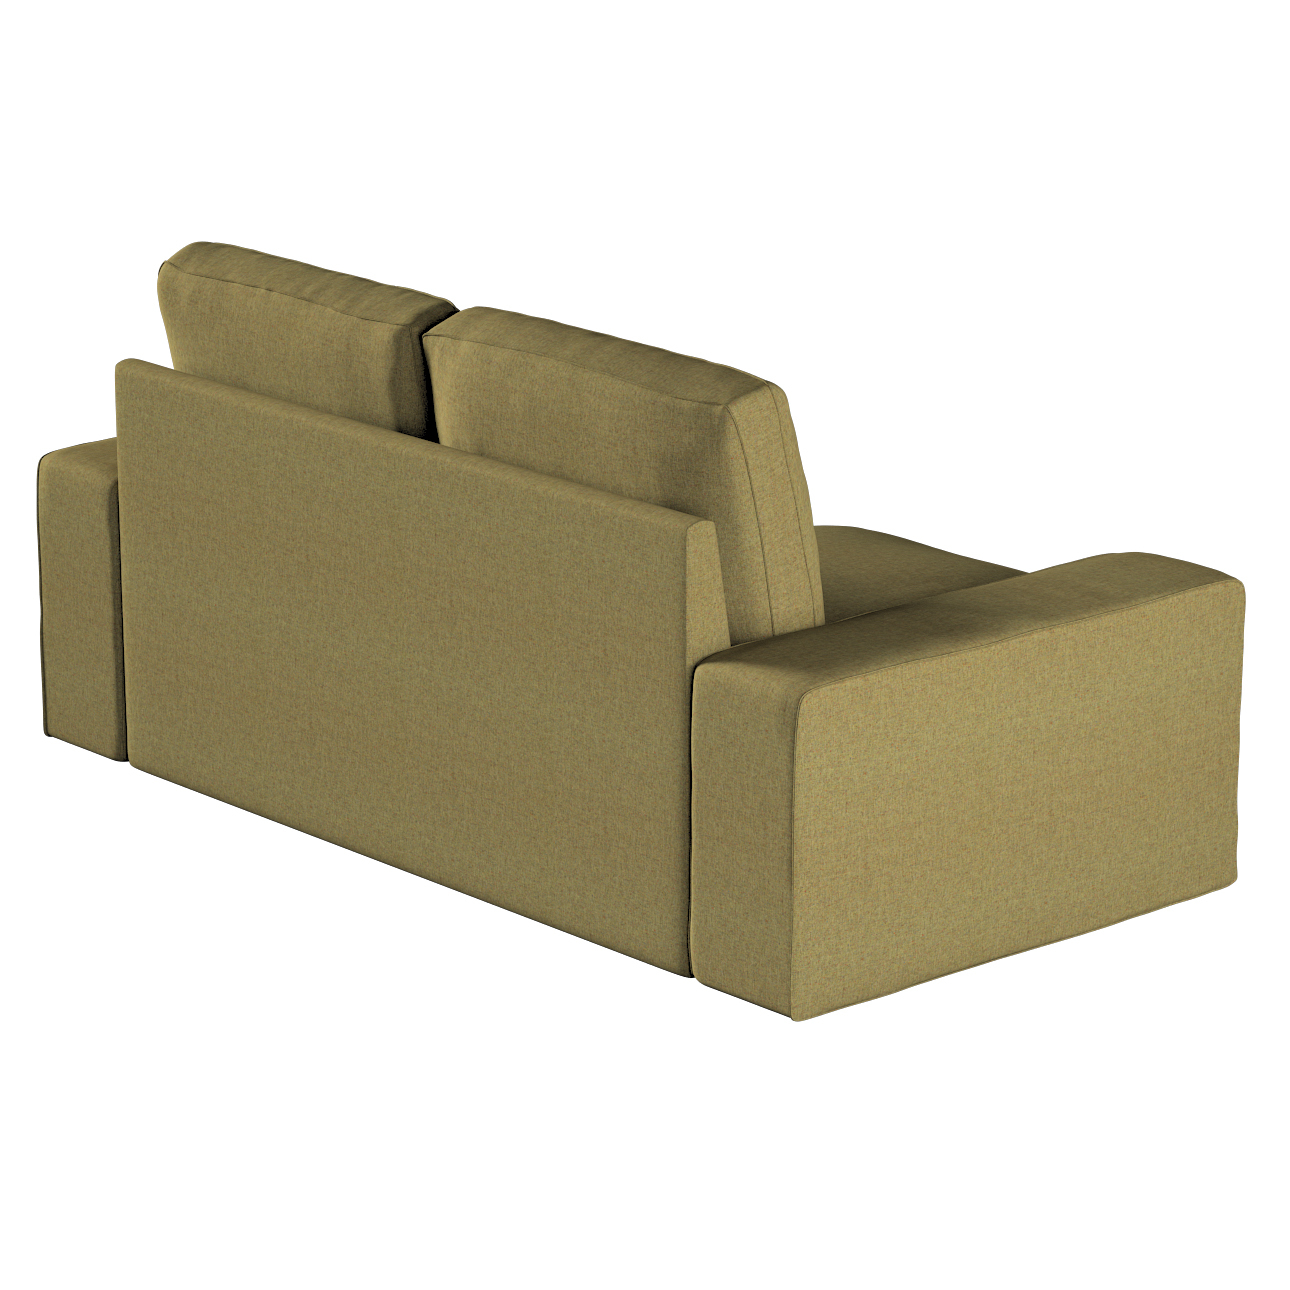 Bezug für Kivik 2-Sitzer Sofa, olivgrün, Bezug für Sofa Kivik 2-Sitzer, Mad günstig online kaufen